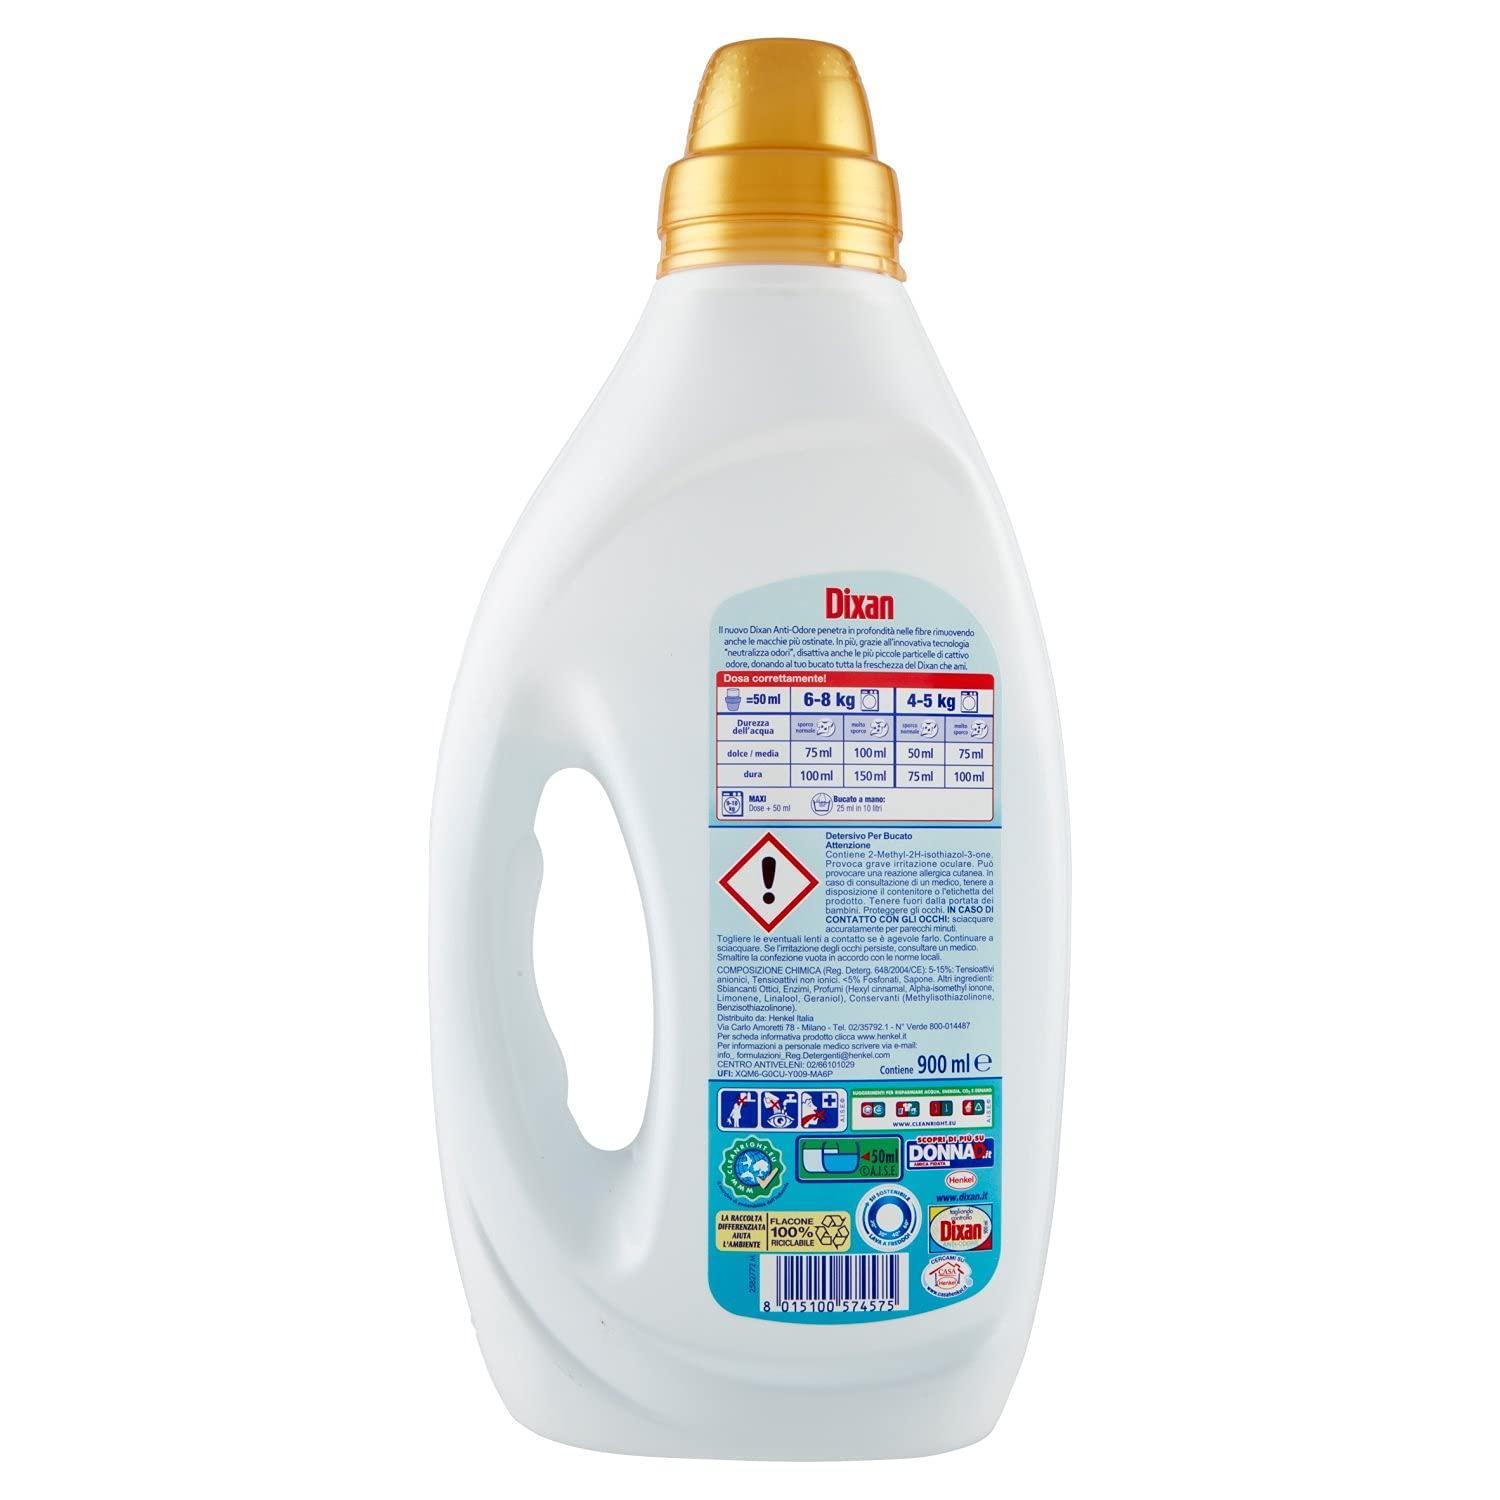 detersivo-liquido-anti-odore-dixan-18-lavaggi-2